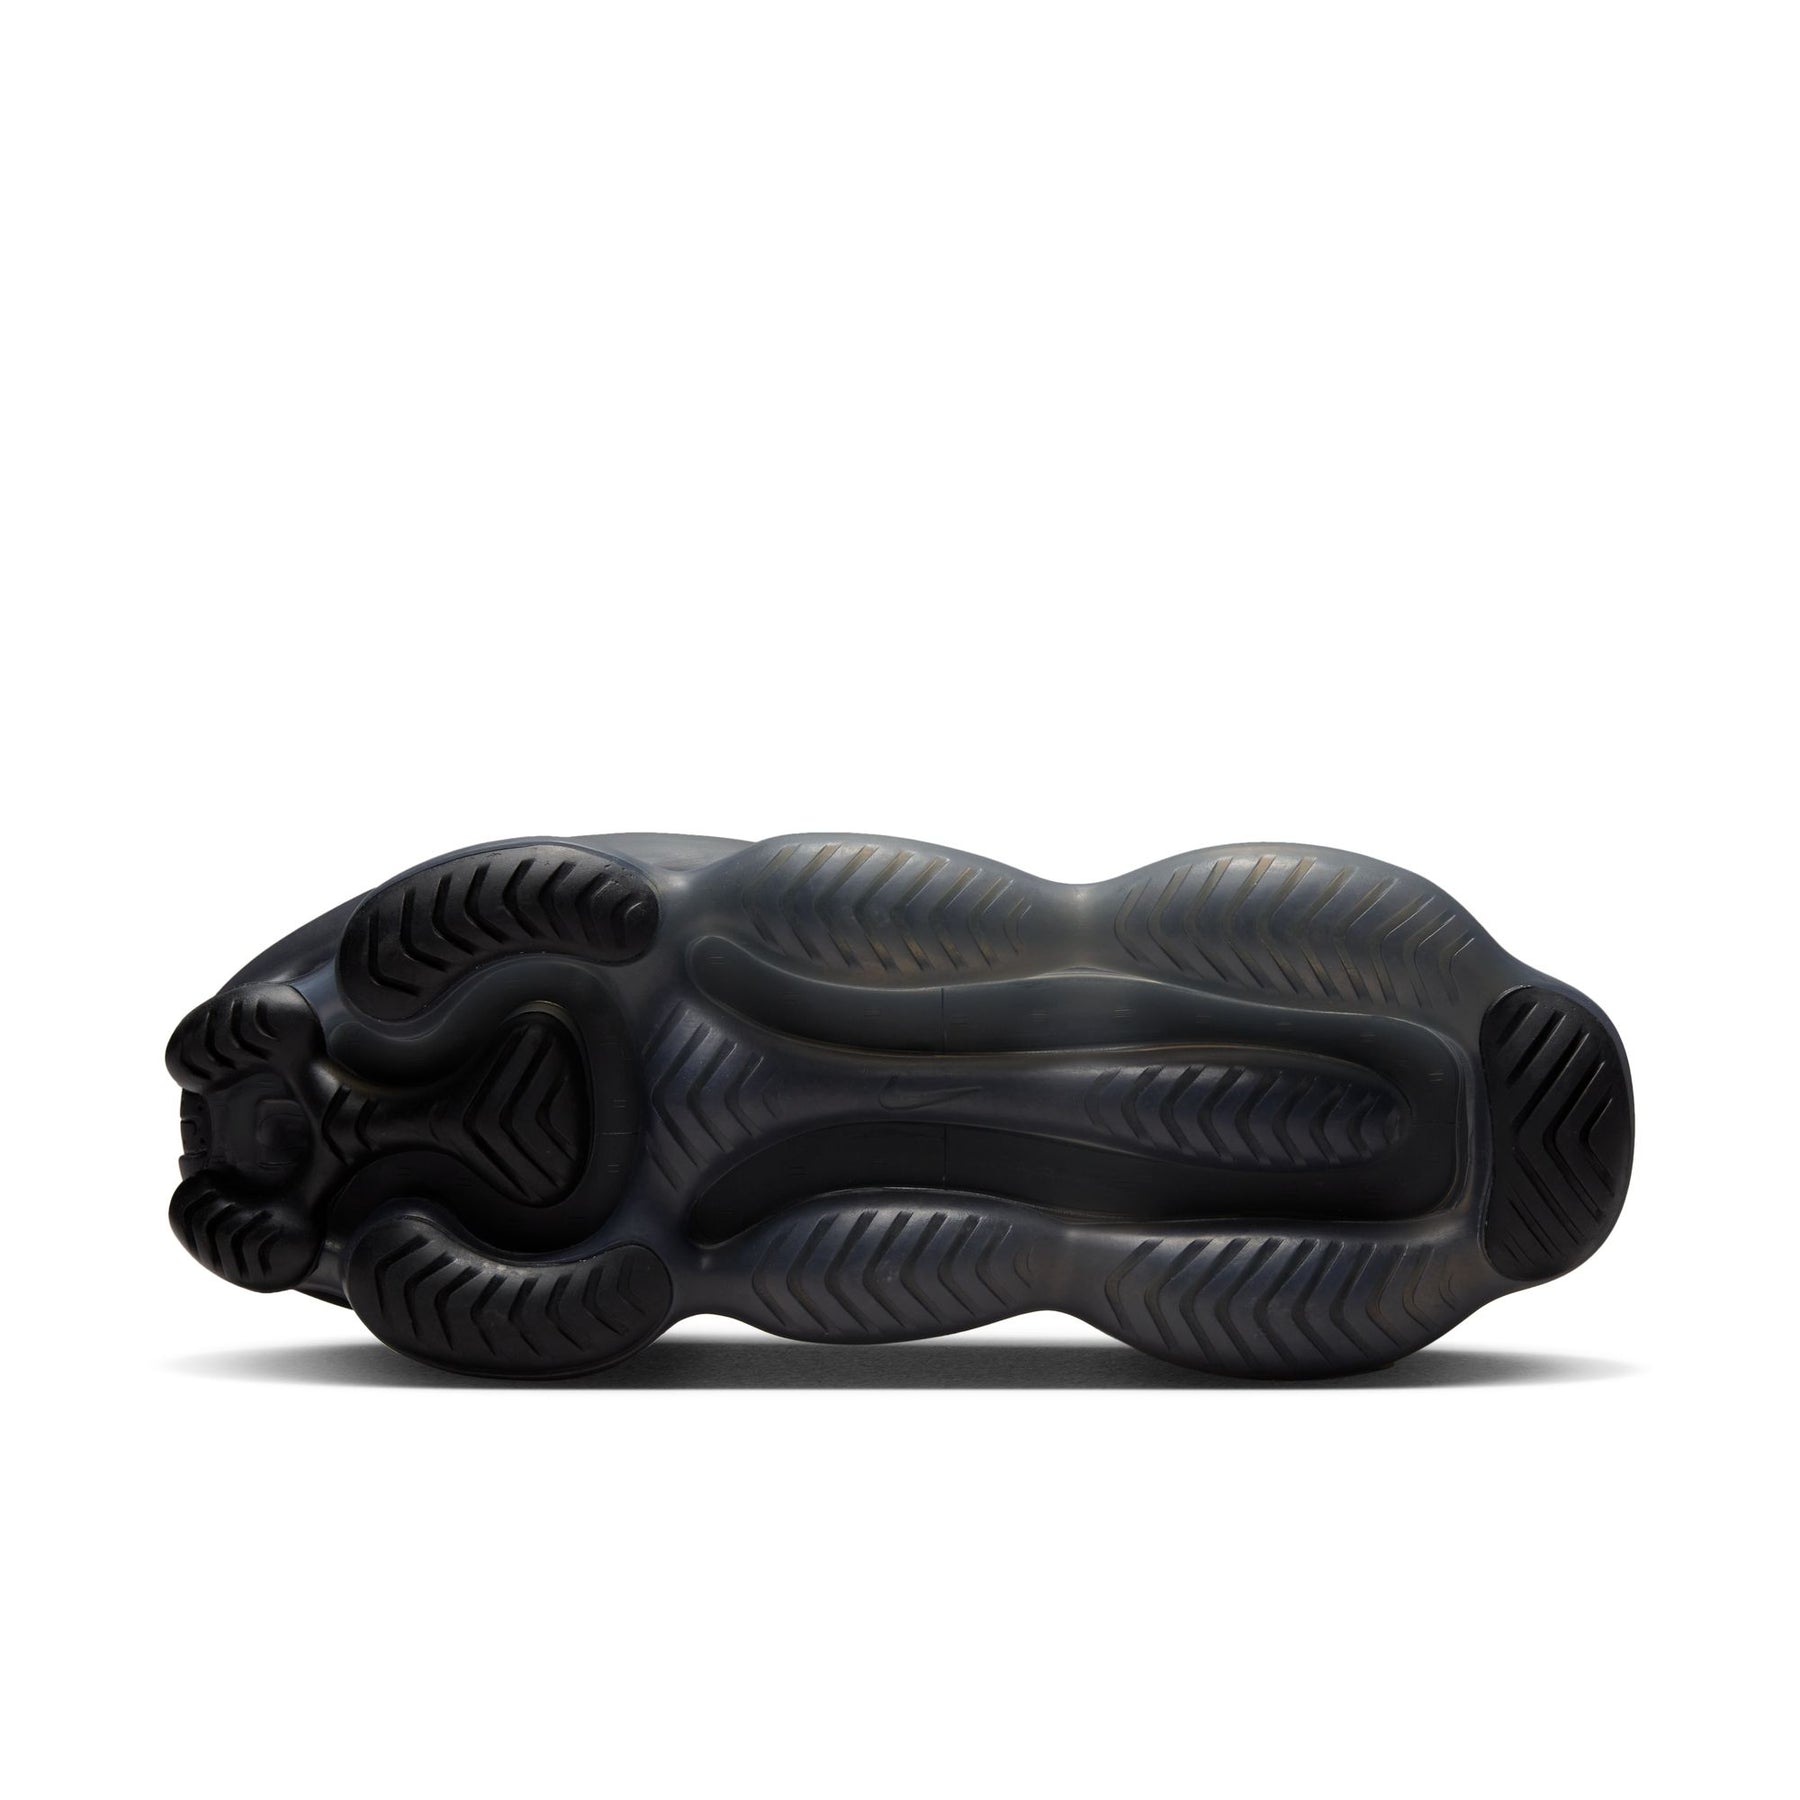 WMNS Nike Air Max Scorpion Flyknit "Black"